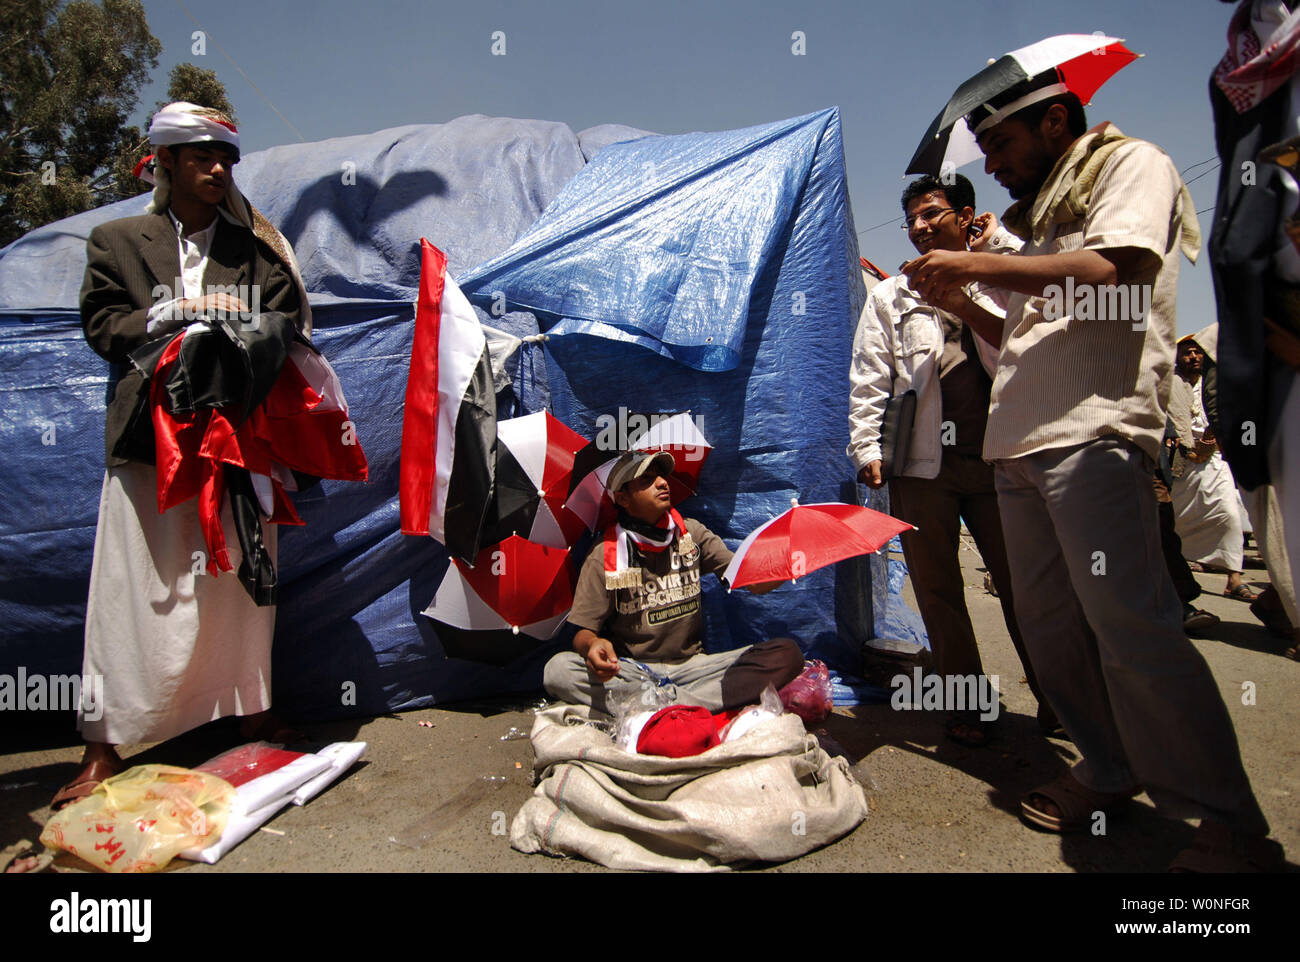 Des manifestants anti-gouvernement yéménite camper dans Al-Hurriya (La Liberté), dans la capitale, le 2 mars 2011. Des démonstrations de plus en plus à Sanaa, le torchage sentiment sécessionniste dans le sud du pays et une rébellion tribale dans le nord ont contribué à ébranler le leadership du pays. UPI/Mohammad Abdullah Banque D'Images